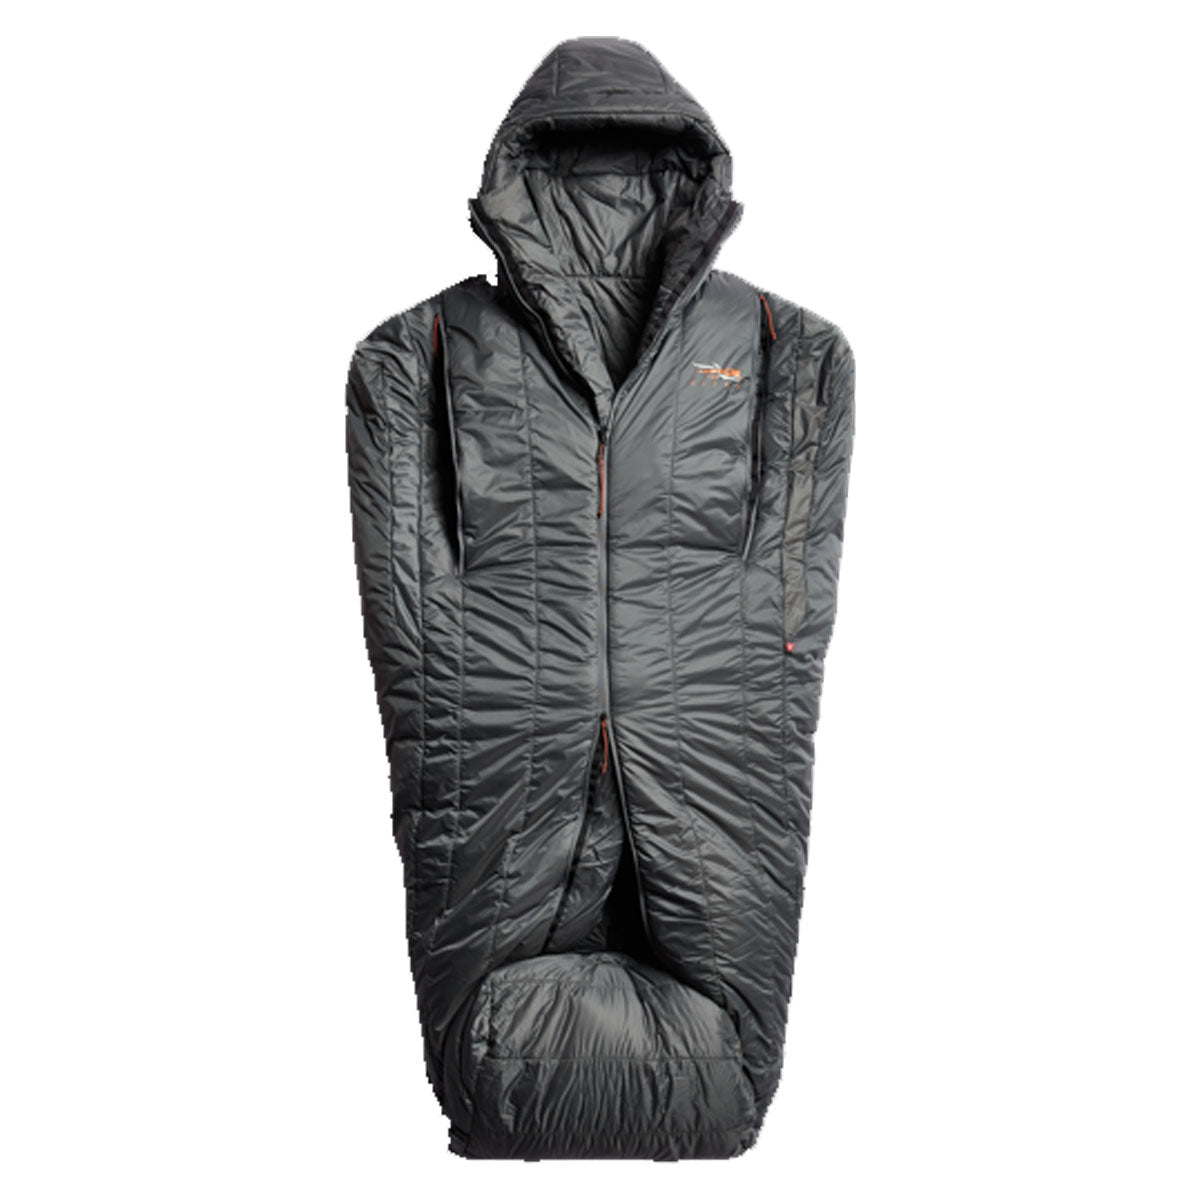 Sitka Kelvin AeroLite 30 Sleeping Bag in  by GOHUNT | Sitka - GOHUNT Shop